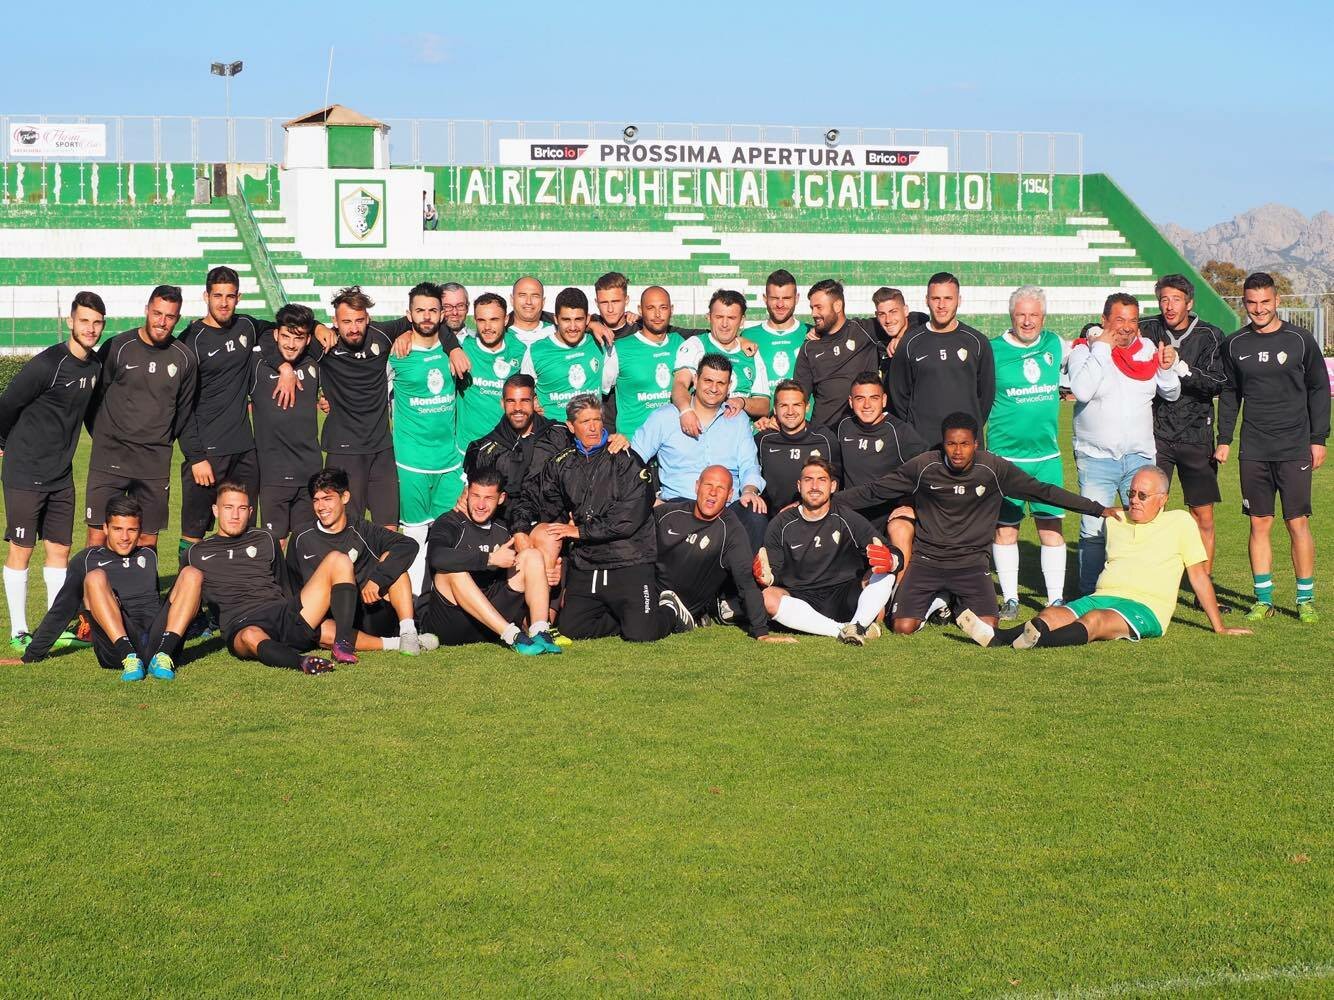 Il gruppo dell'Arzachena festeggia al "Biagio Pirina" la promozione in Serie C